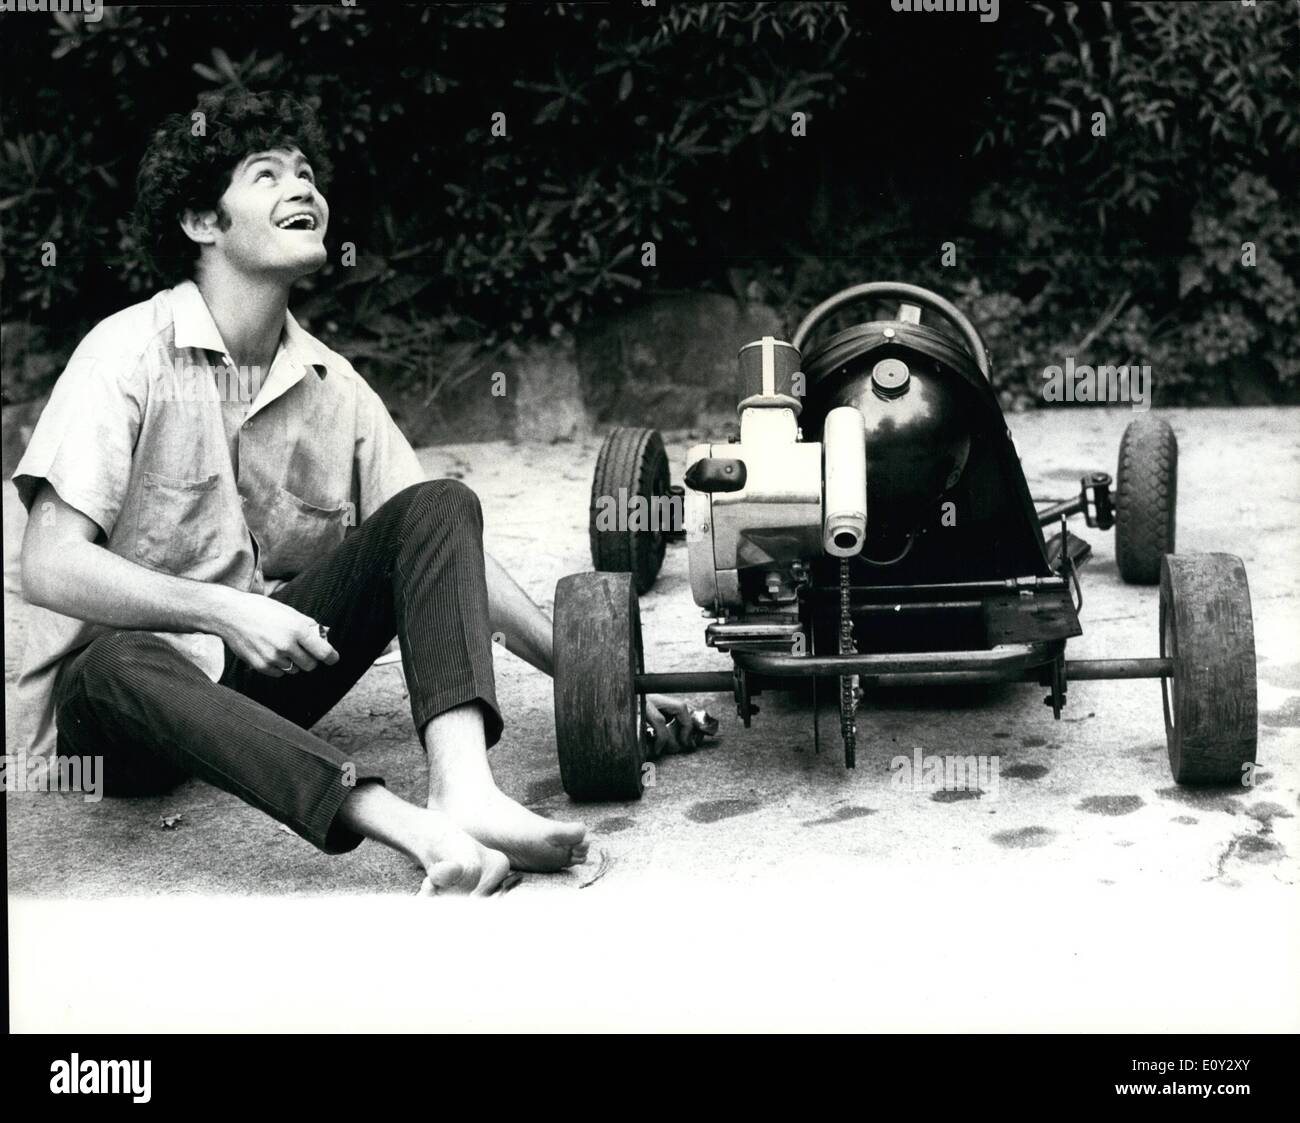 Sett. 09, 1968 - Hi-Speed Monkee: Monkee Micky Dolenz ha recentemente si trovò una nuova emozionante hobby-go-kart racing! Ed essendo meccanicamente una mentalità Monkee, Micky ha fatto più di go-kart racing-egli ha effettivamente si costruì un go-kart, nel suo giardino nella sua casa di Los Angeles. E ogni volta che egli non è il giro del mondo con il gruppo Micky di godere a fondo se stesso racing il go-kart. Mostra fotografica. Monkee Micky Dolenz mantiene la sua casa costruita di go-kart in tip top condizioni pronto per il racing. Foto Stock